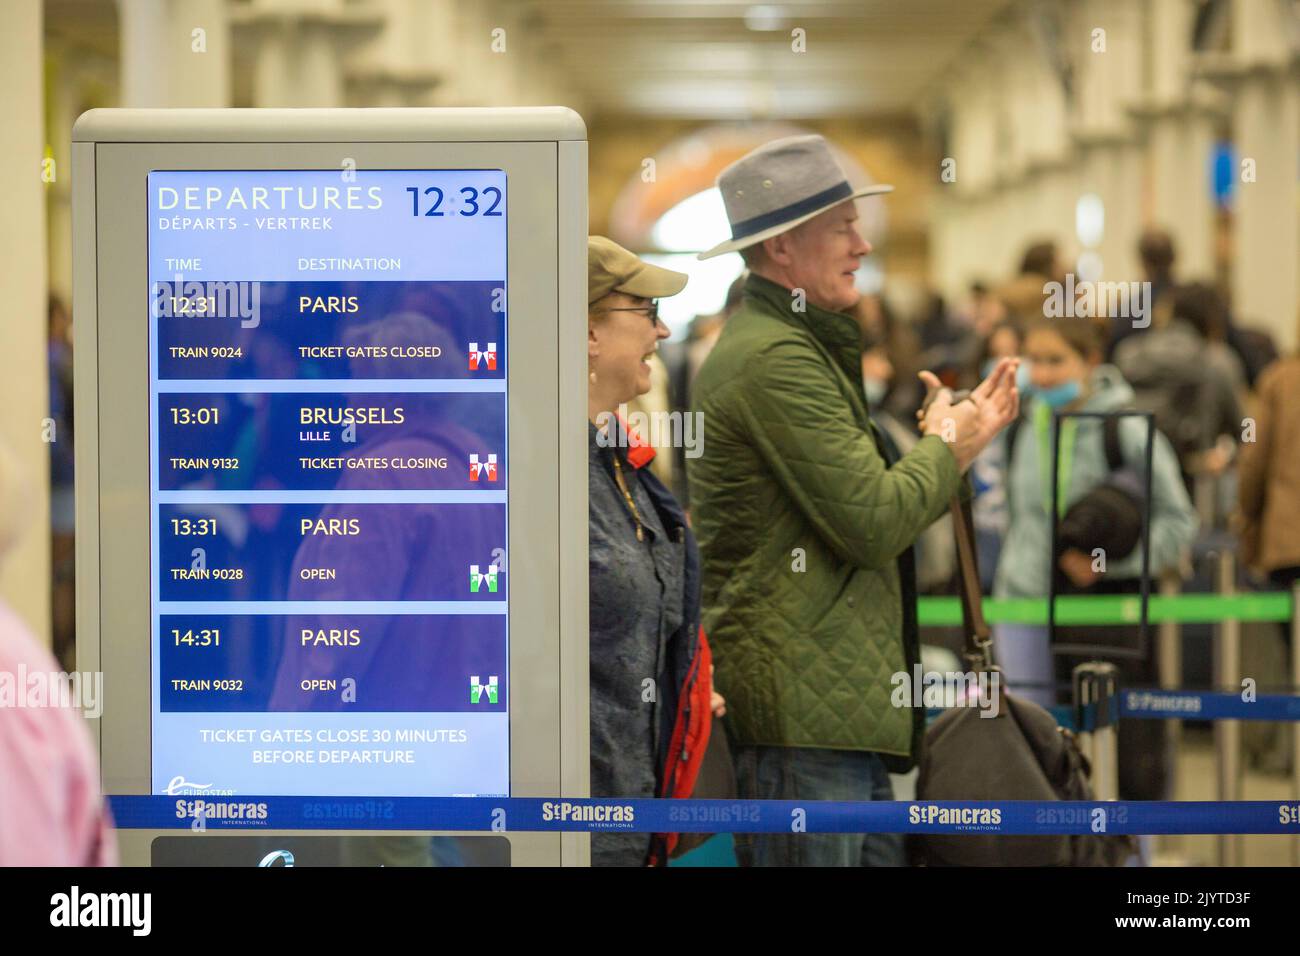 Am Bahnhof St Pancras in London stehen die Leute für die Eurostar-Abflüge an, wenn ein Feiertagswochenende beginnt. Stockfoto